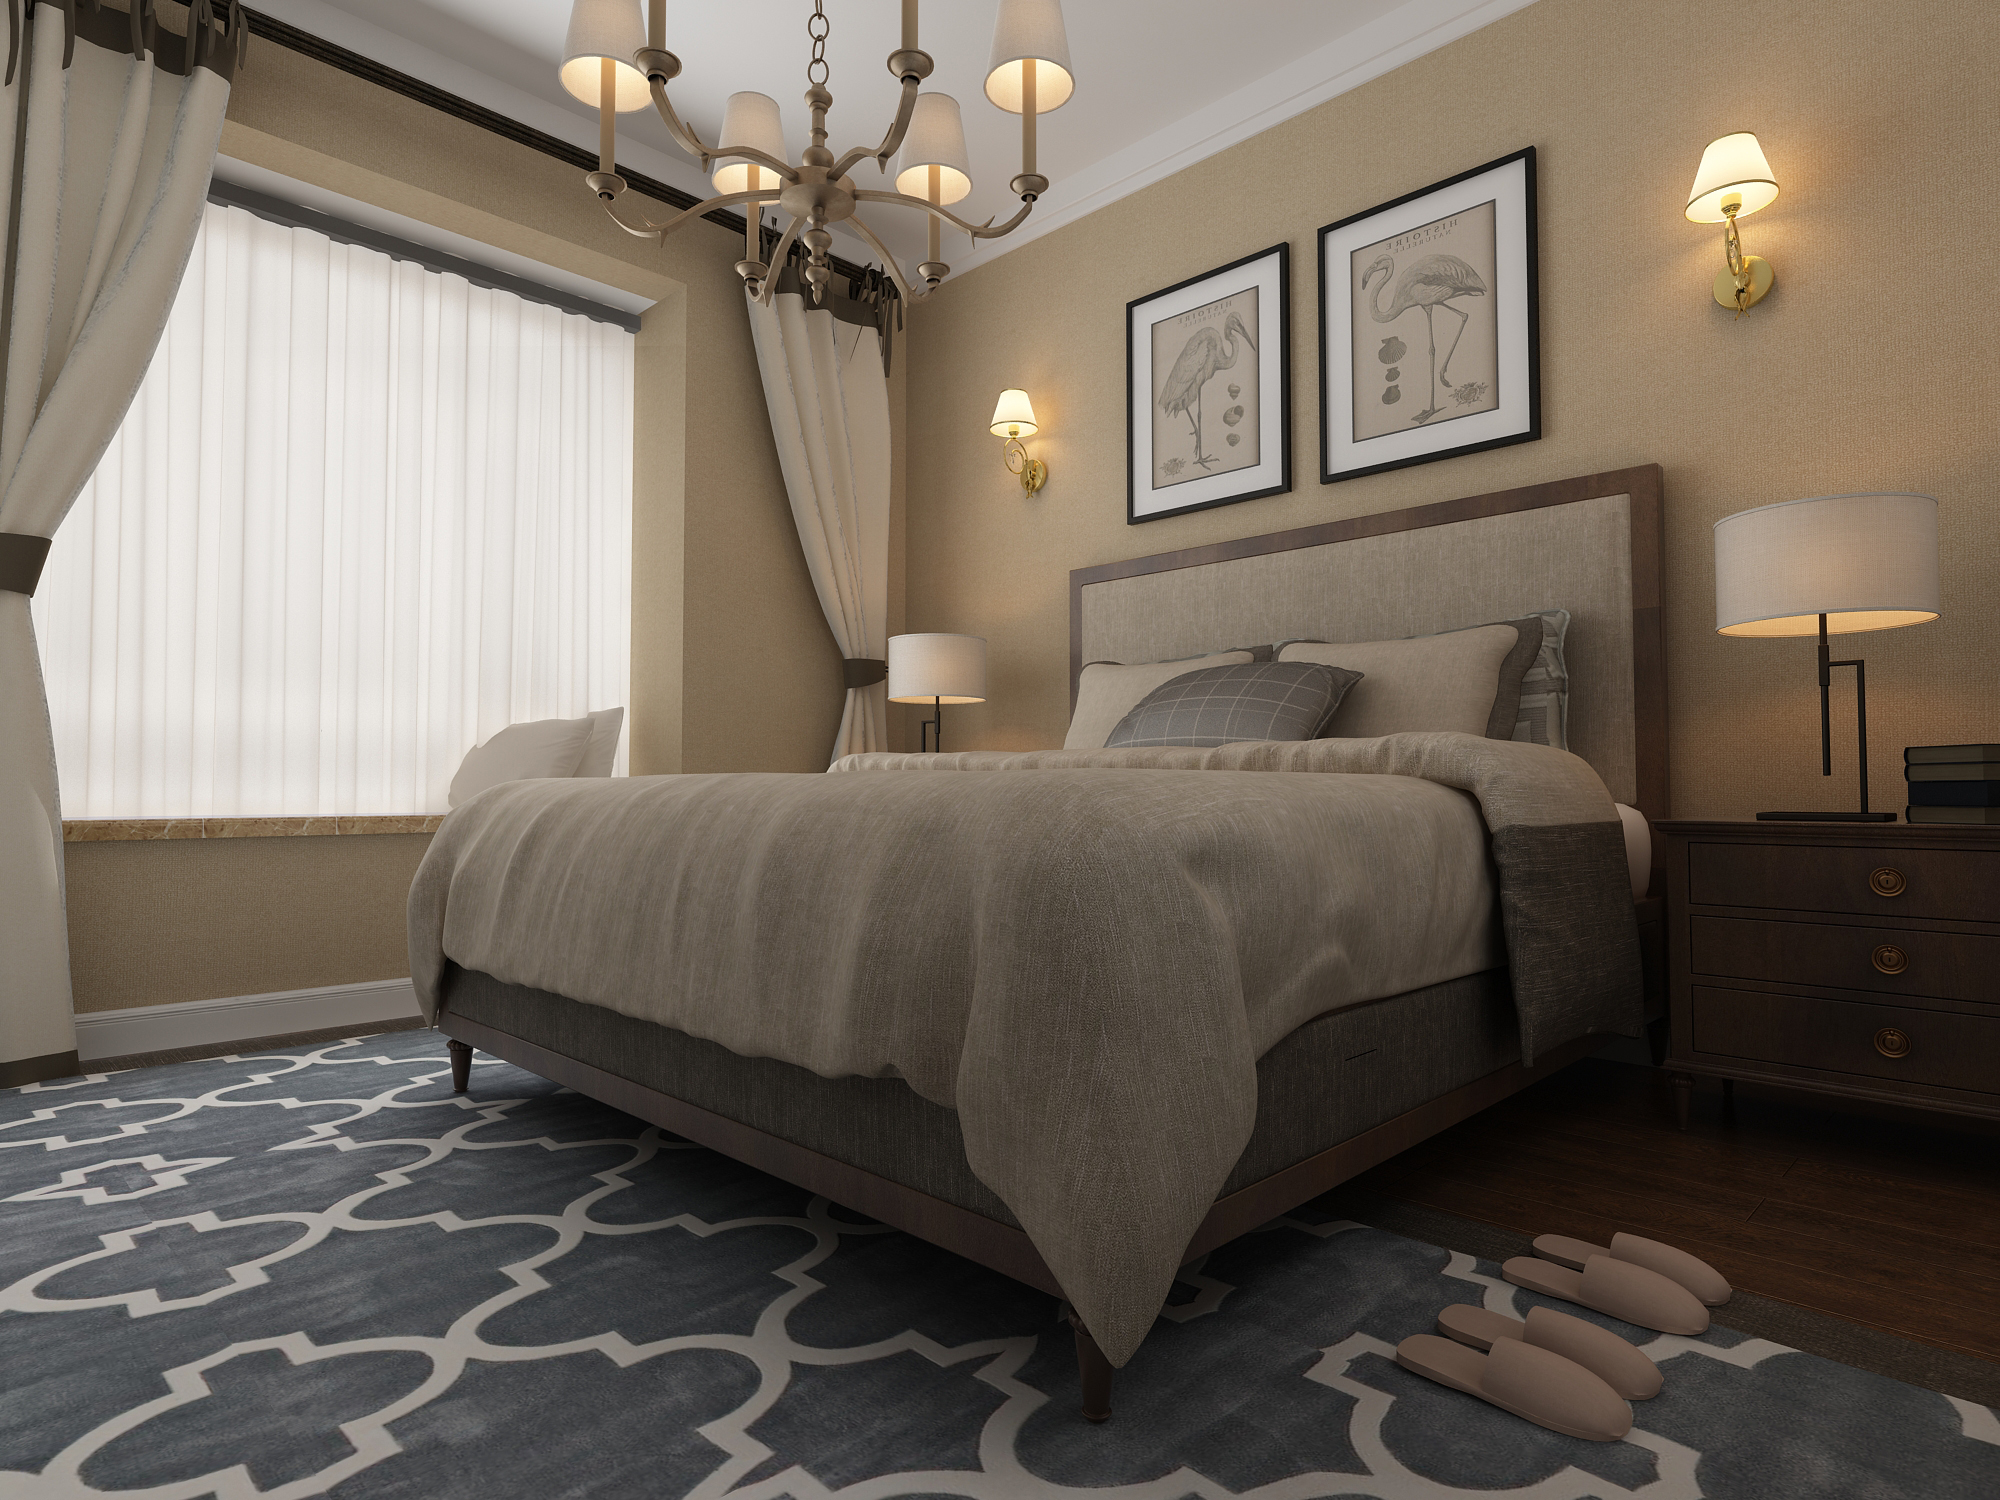 卧室选取颜色时注重软装的搭配,亚麻色的墙纸配合深色地面铺装